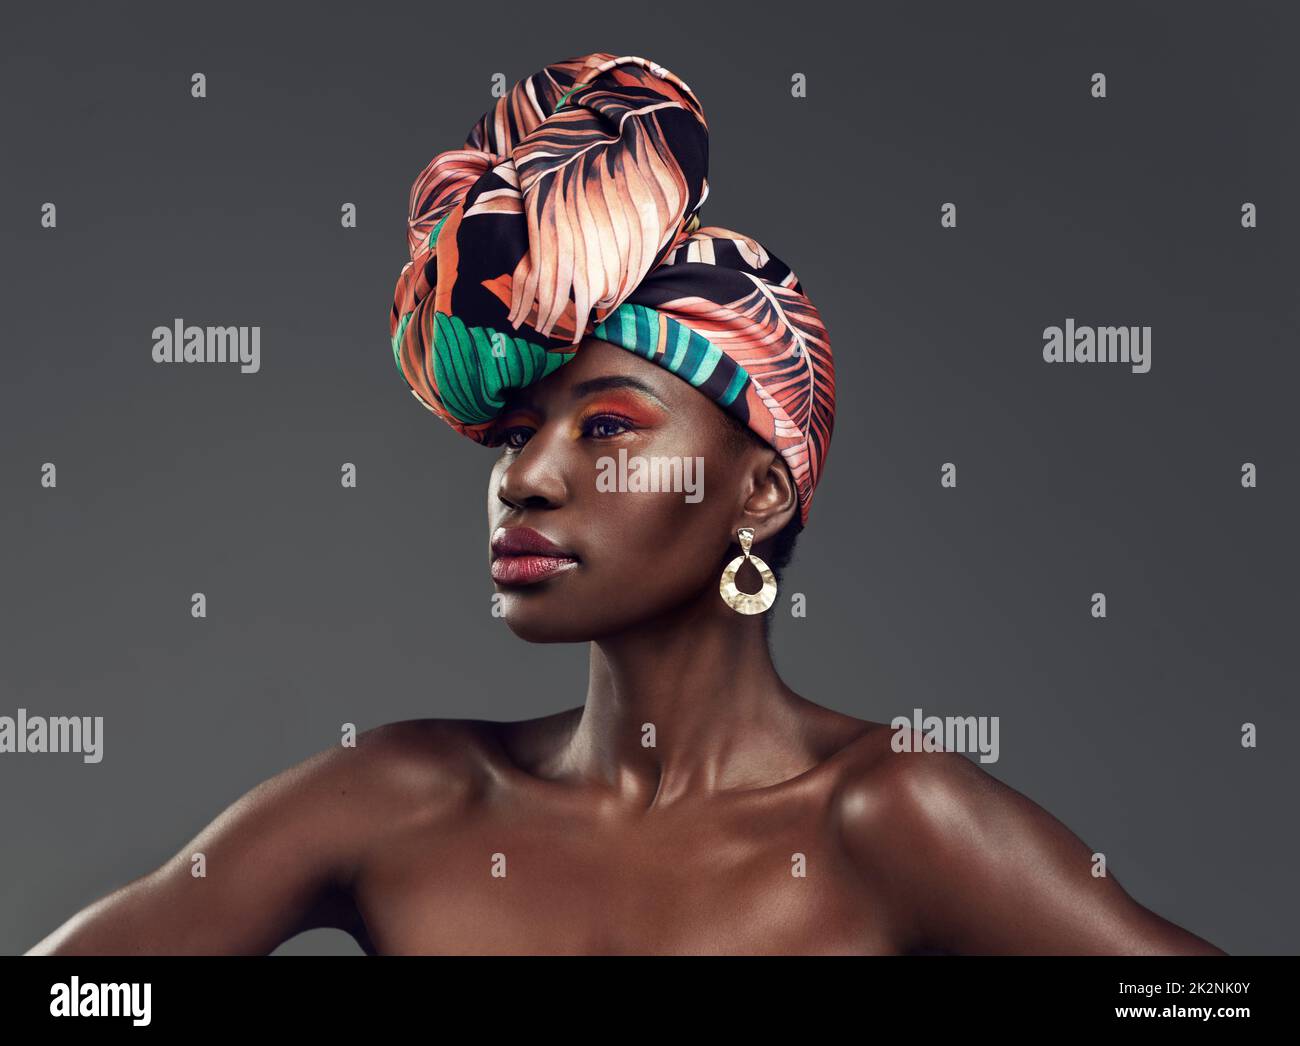 Ja, du kannst feminin sein und immer noch wild sein. Studiofoto einer wunderschönen jungen Frau, die eine traditionelle afrikanische Kopfummantelung vor grauem Hintergrund trägt. Stockfoto